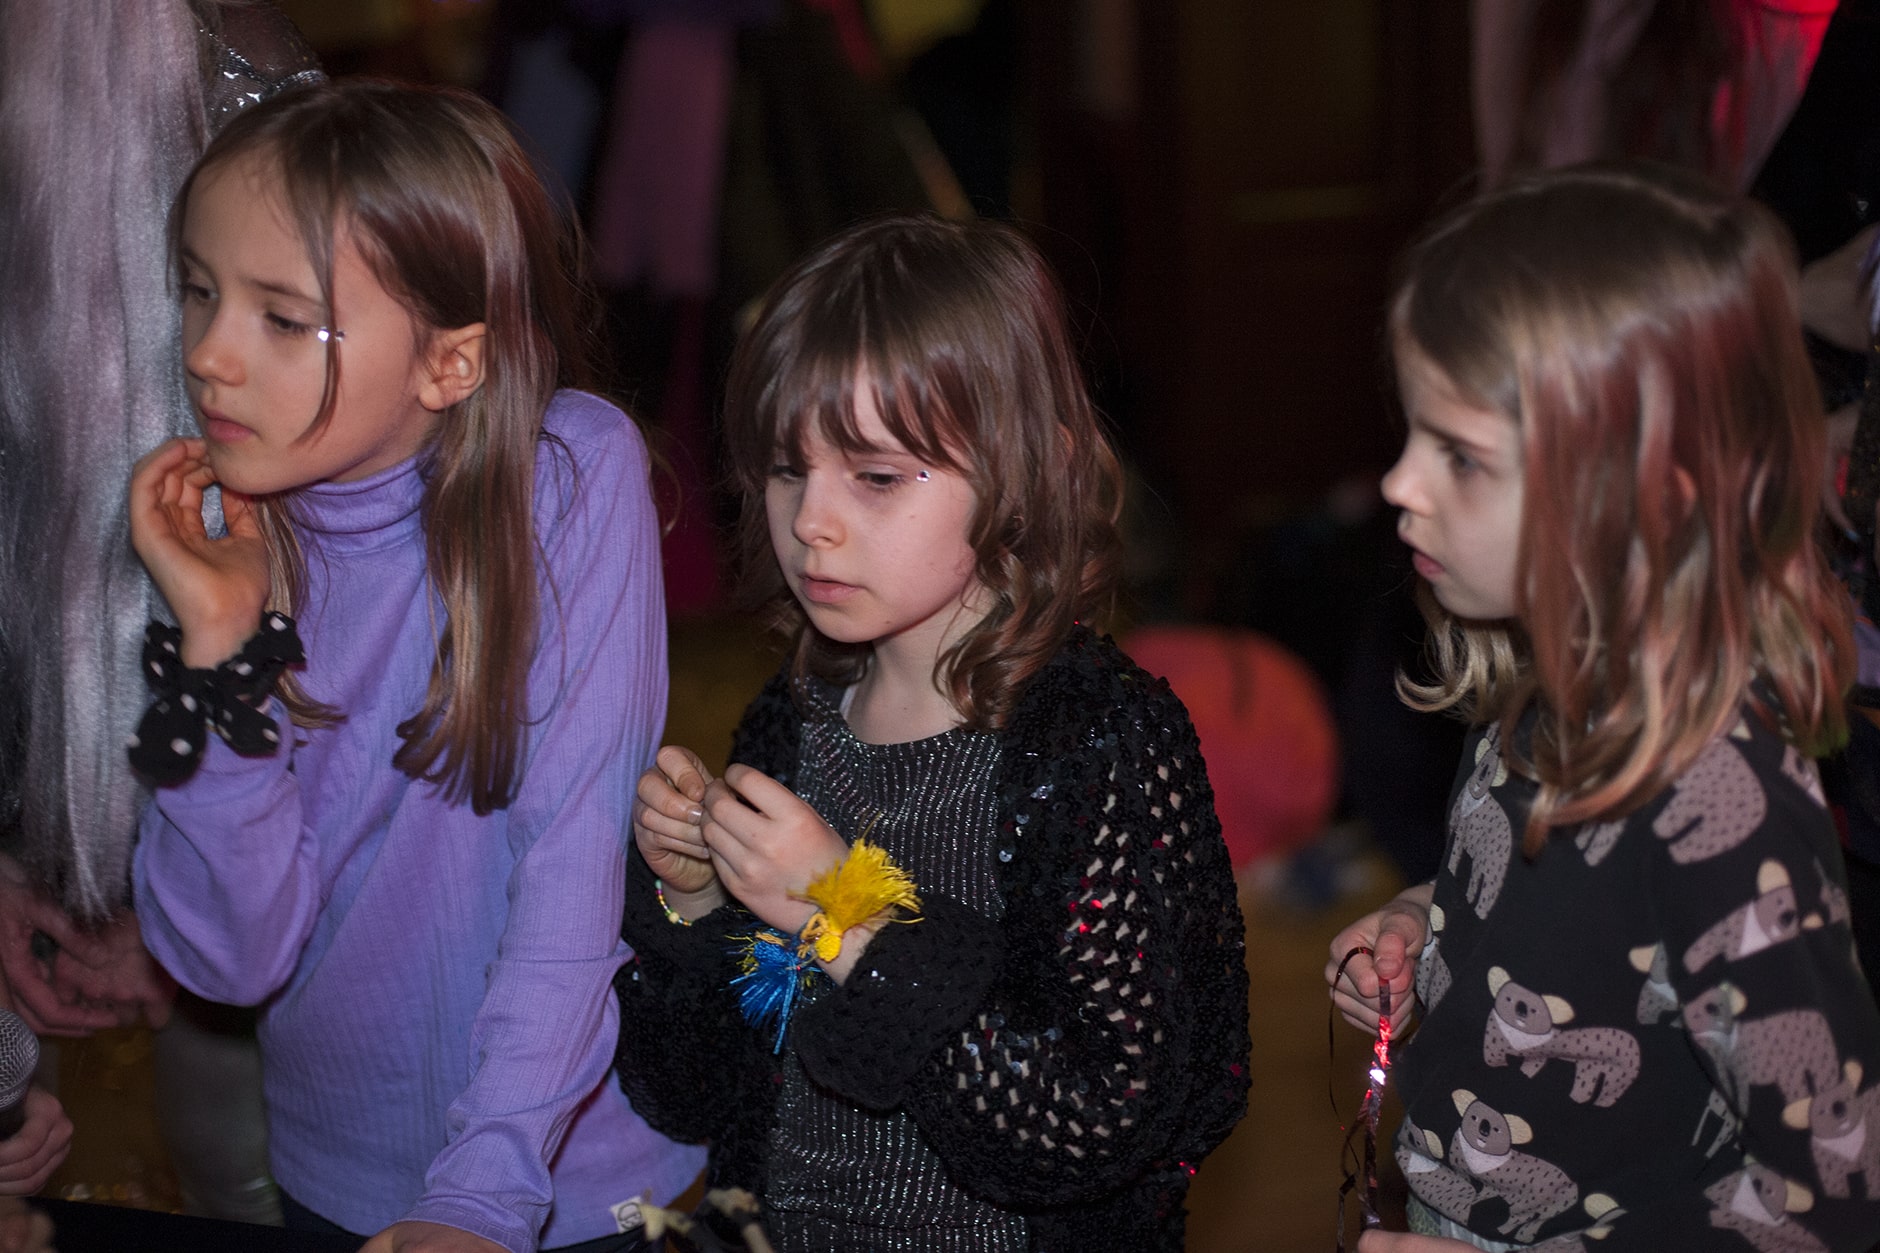 Trójka dzieci na imprezie w pomieszczeniu, uważnie przyglądająca się czemuś poza kamerą, wyrażająca ciekawość i koncentrację.